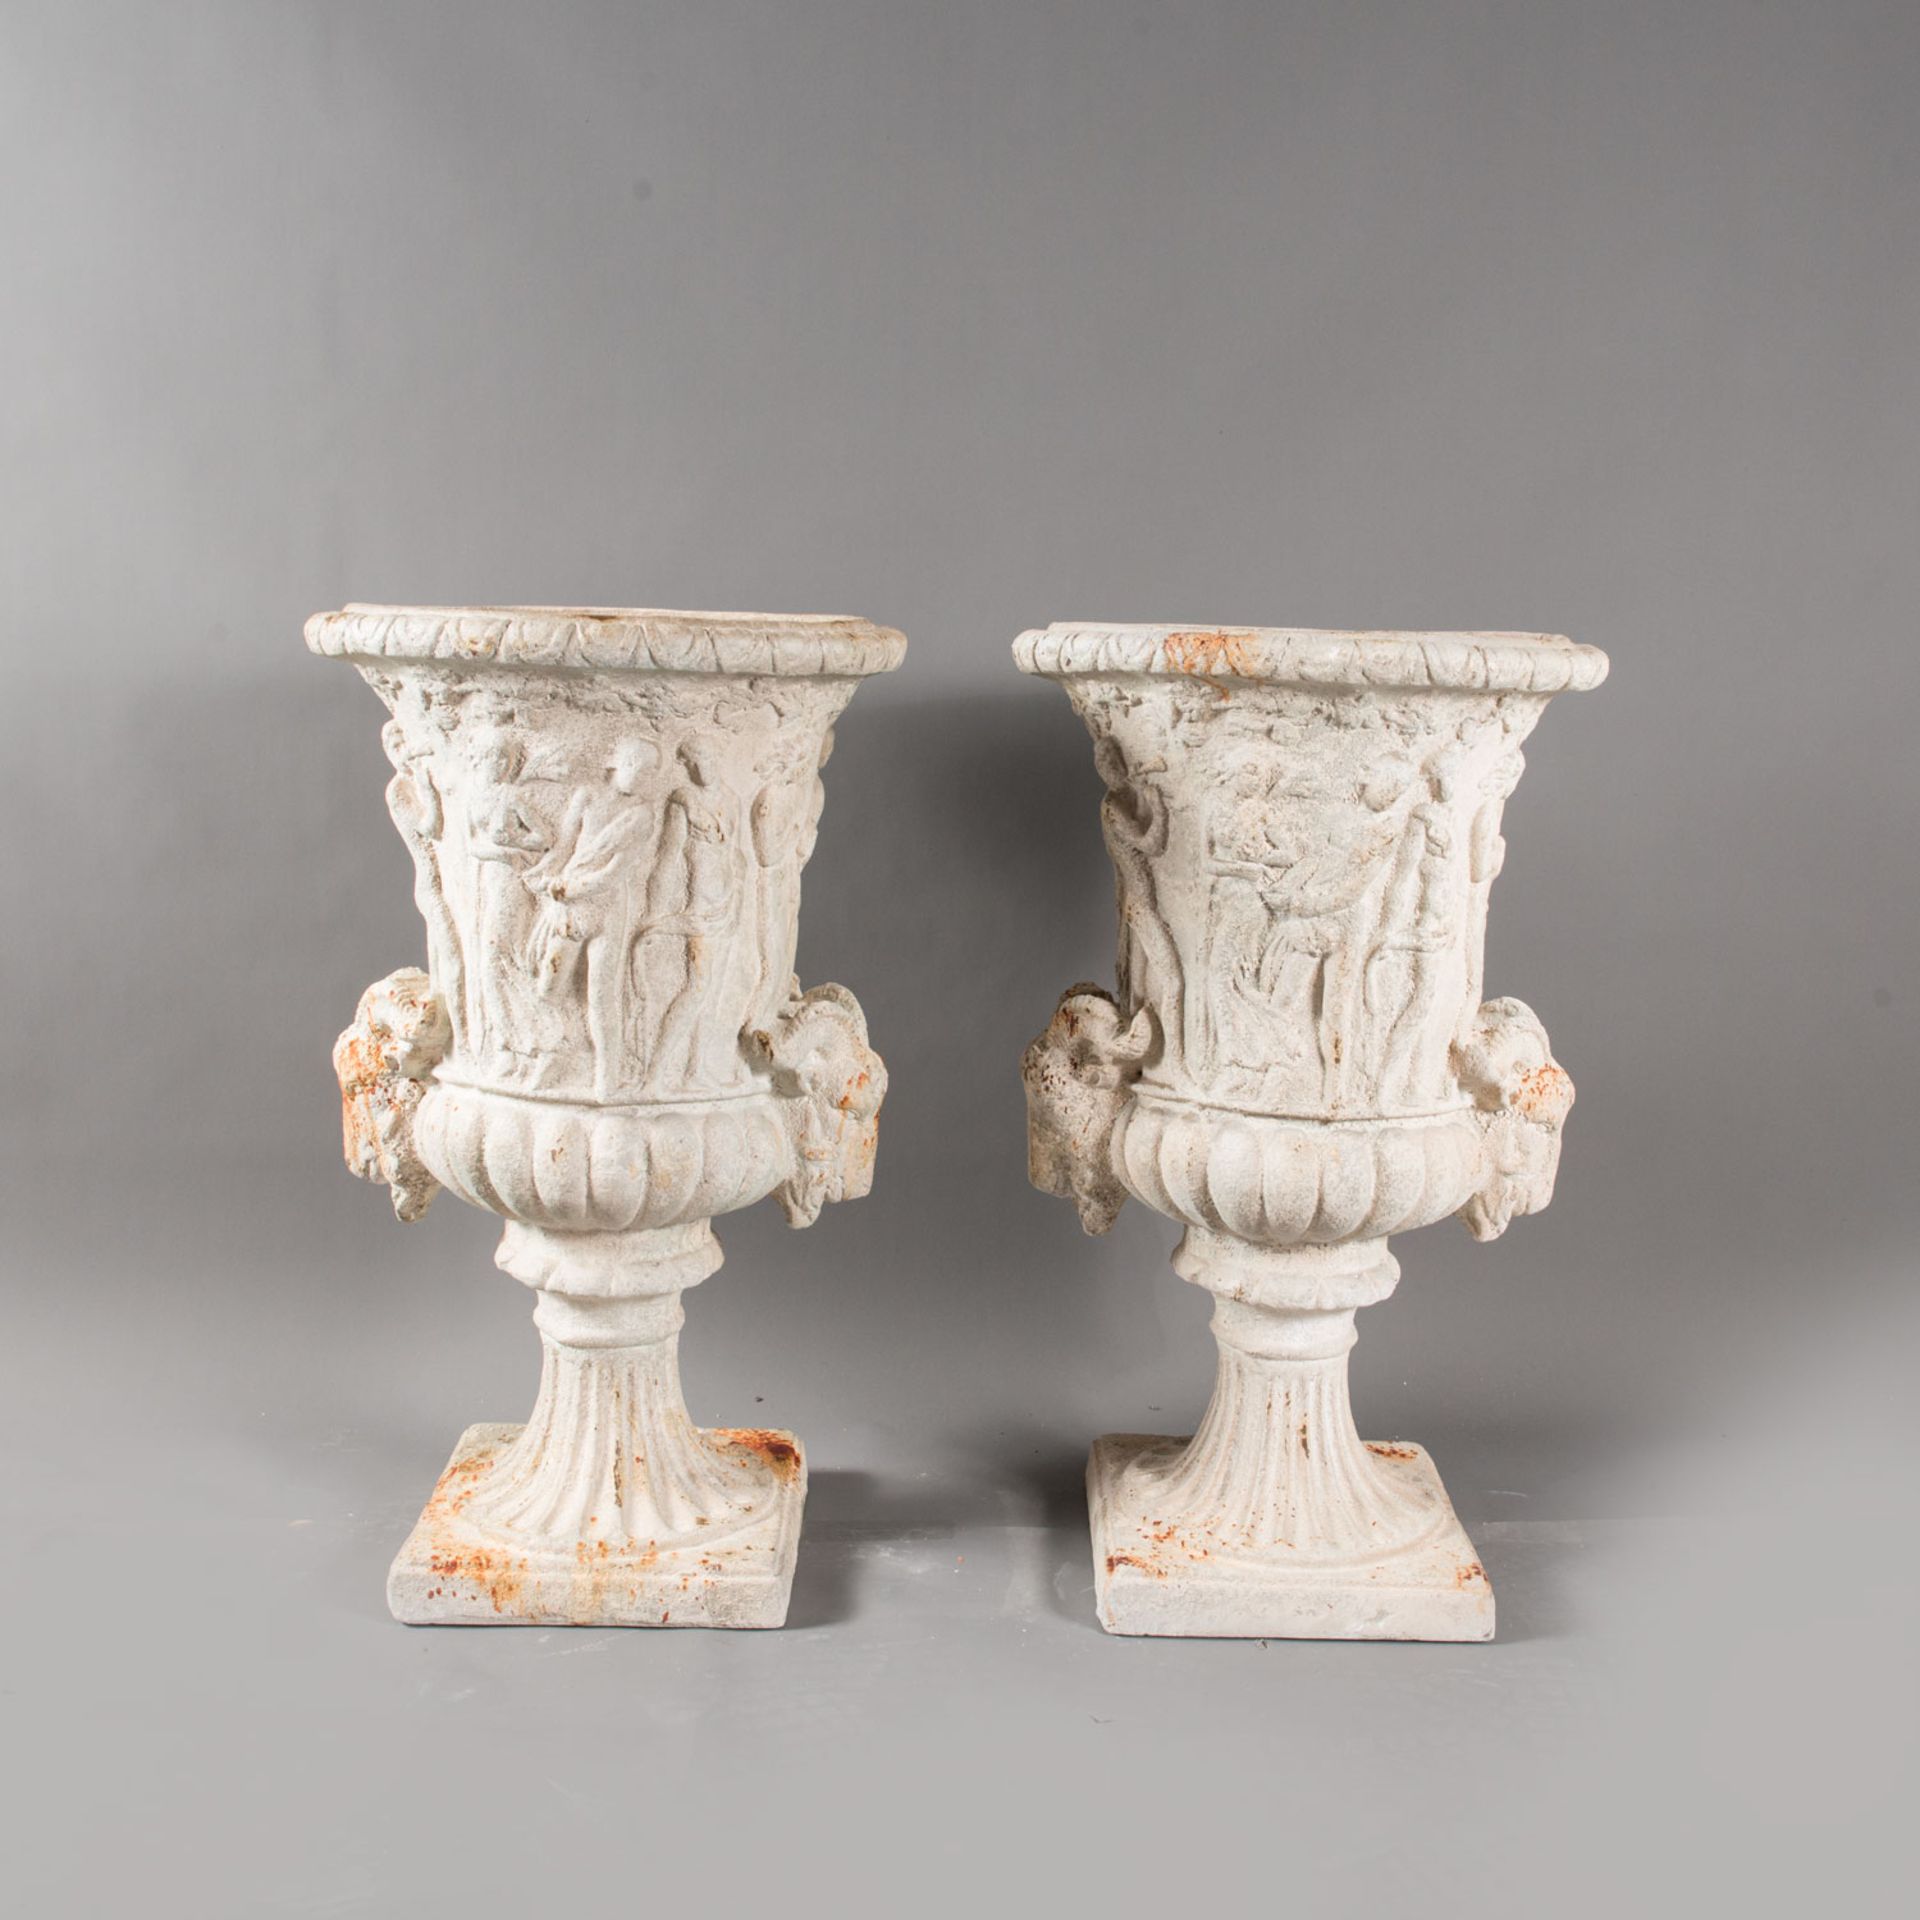 Pair of classical garden urns